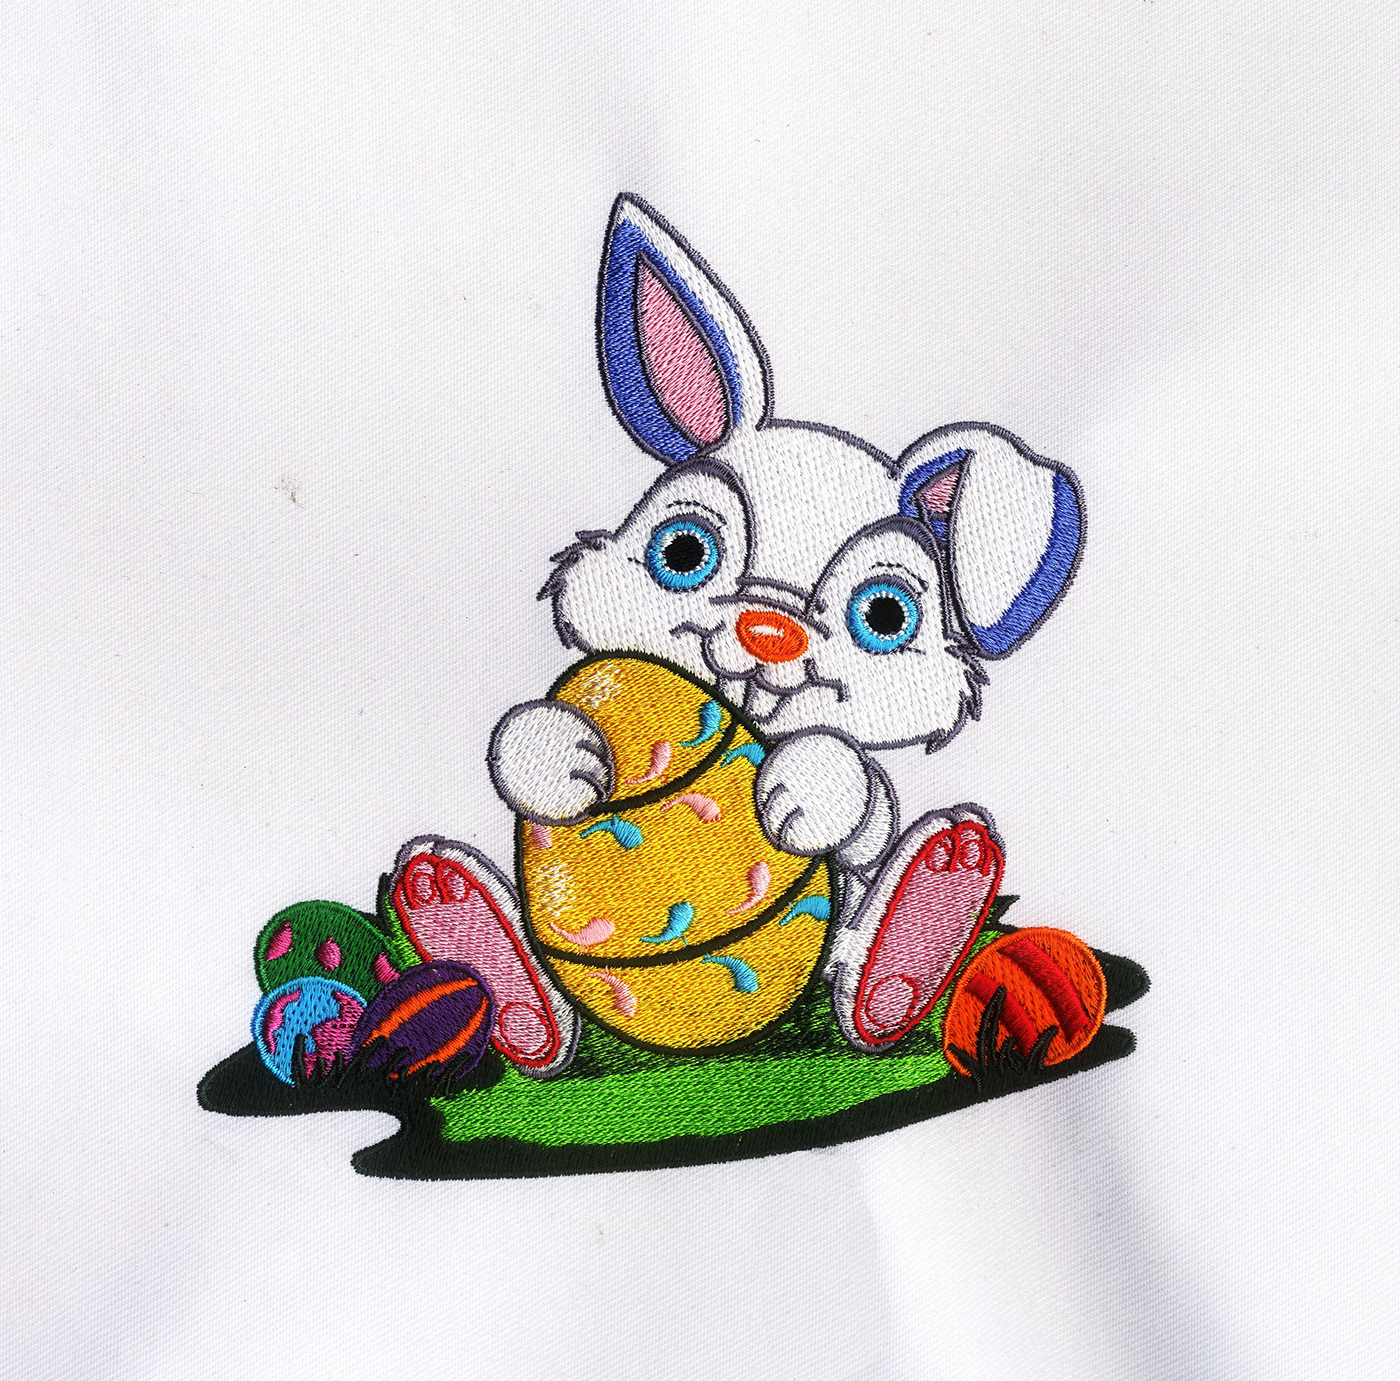 Embroidery embroidery design Machine Embroidery Design Easter Embroidery Design Rabbit Embroidery Design